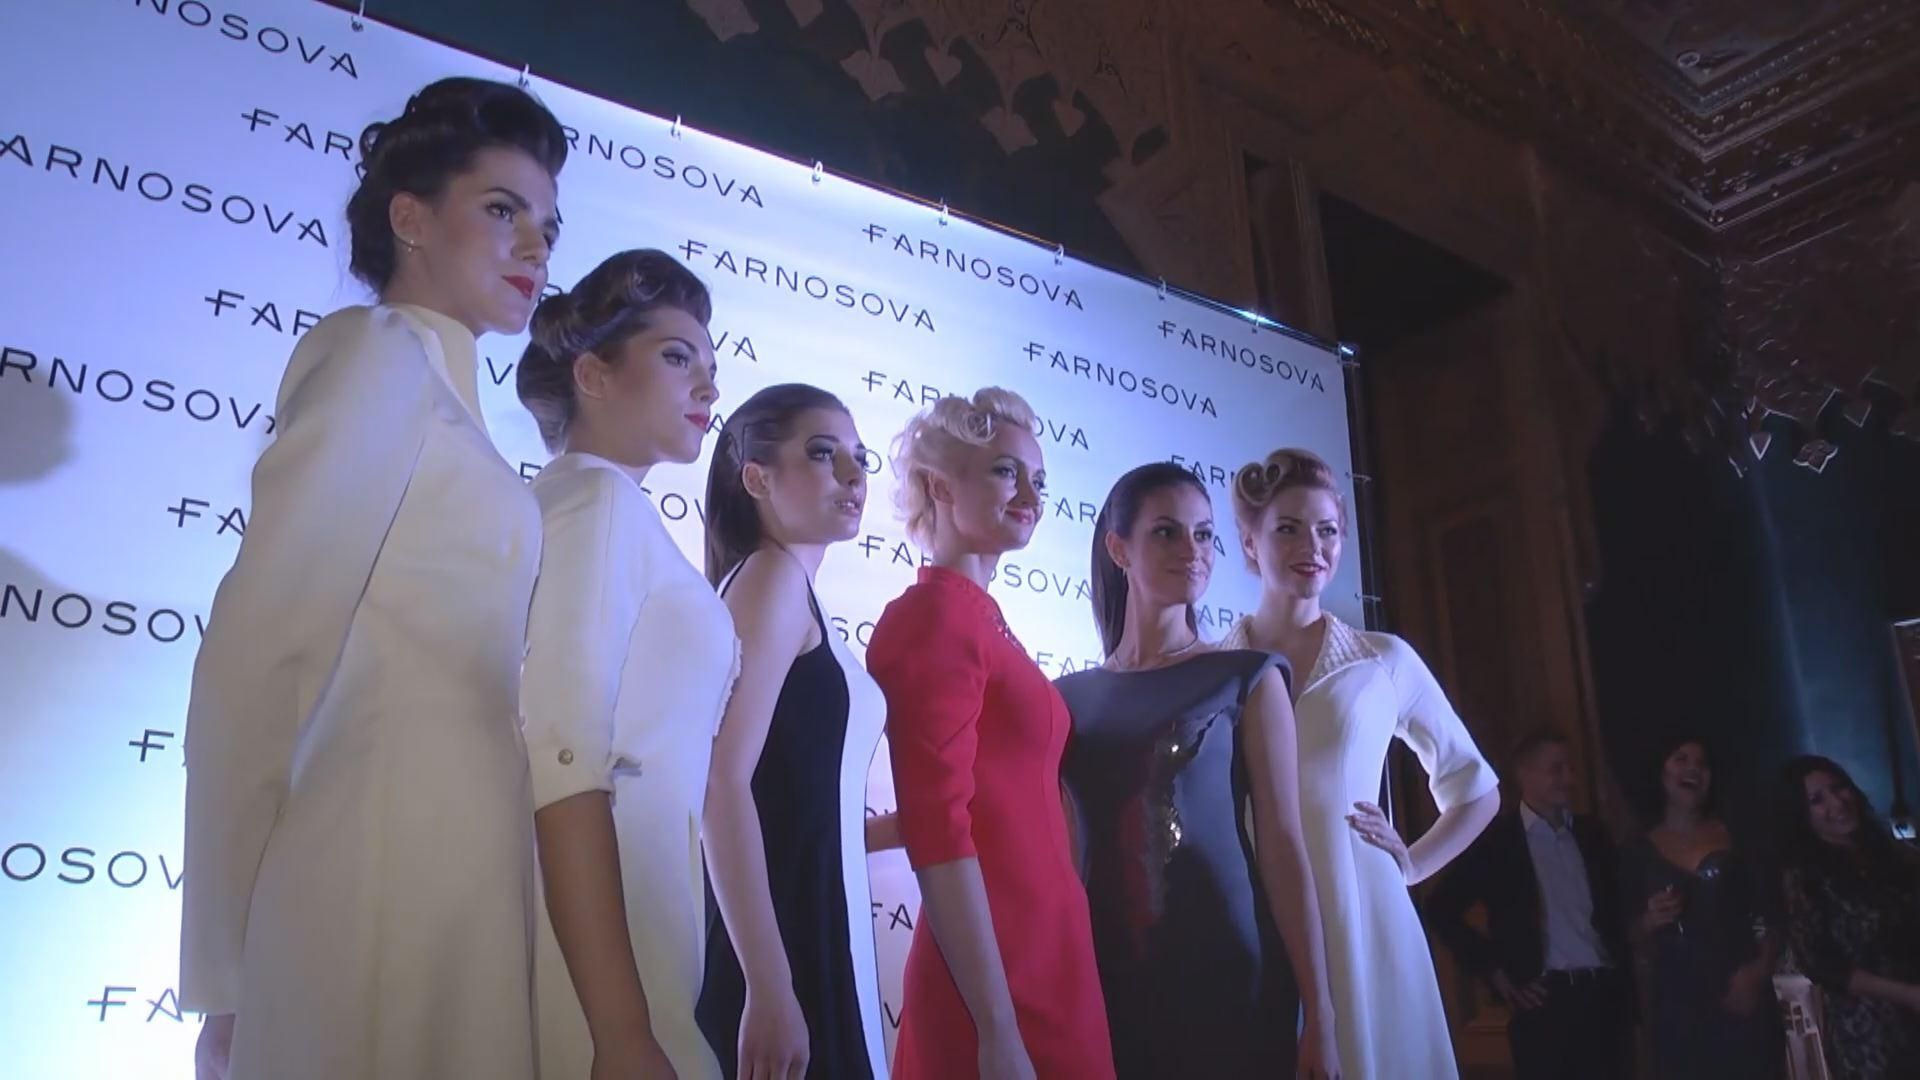 Наталья Фарносова представила дебютную коллекцию одежды